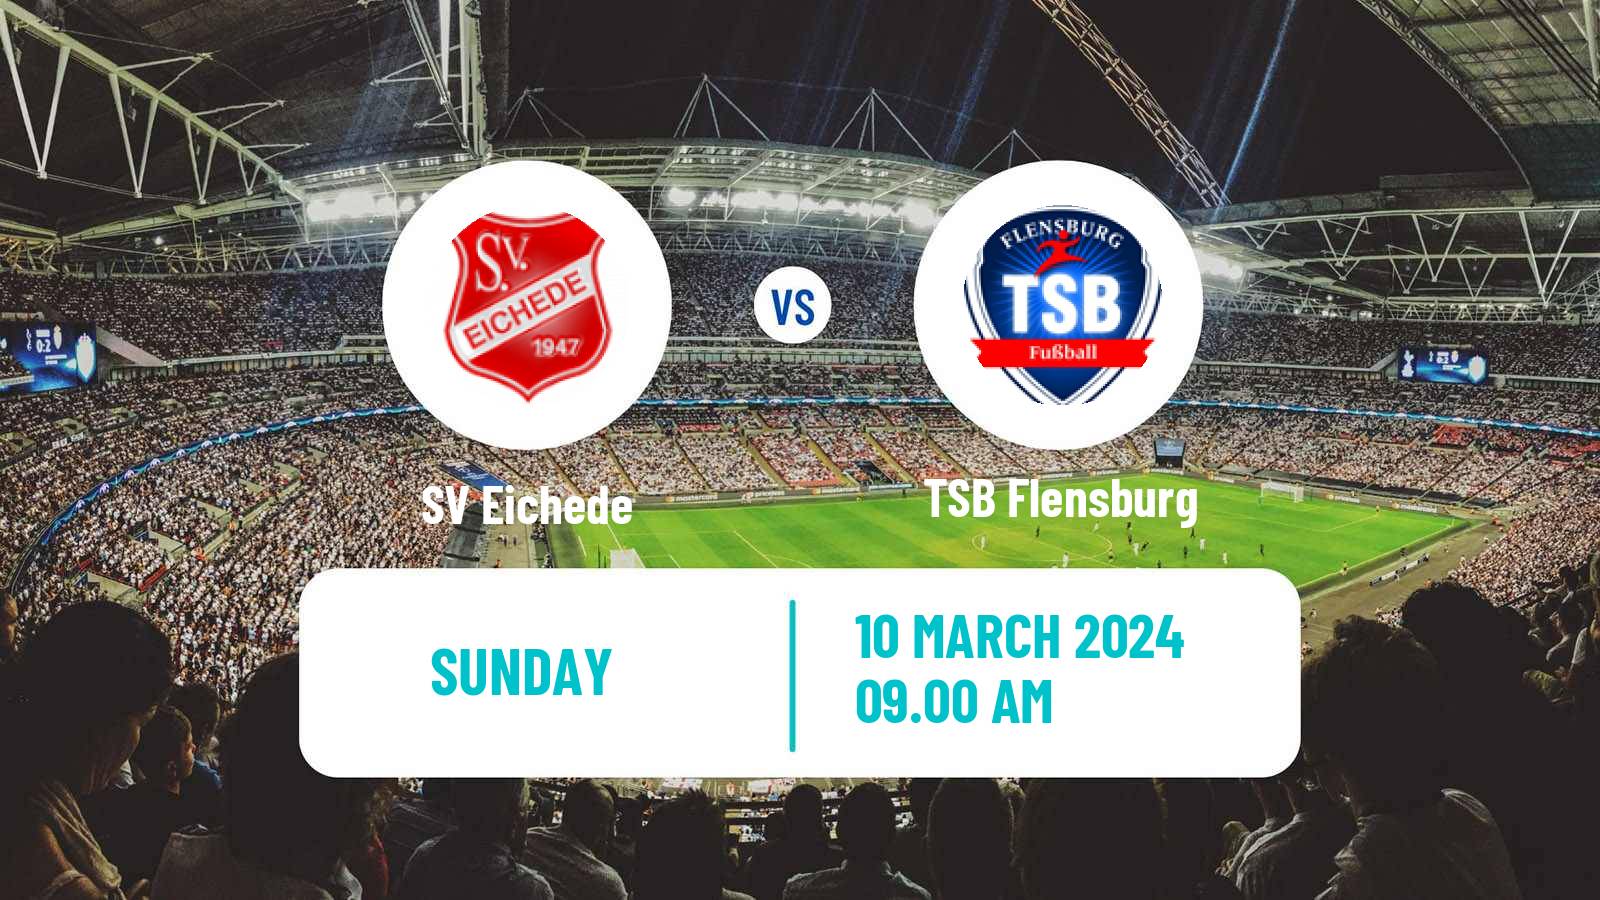 Soccer German Oberliga Schleswig-Holstein Eichede - TSB Flensburg